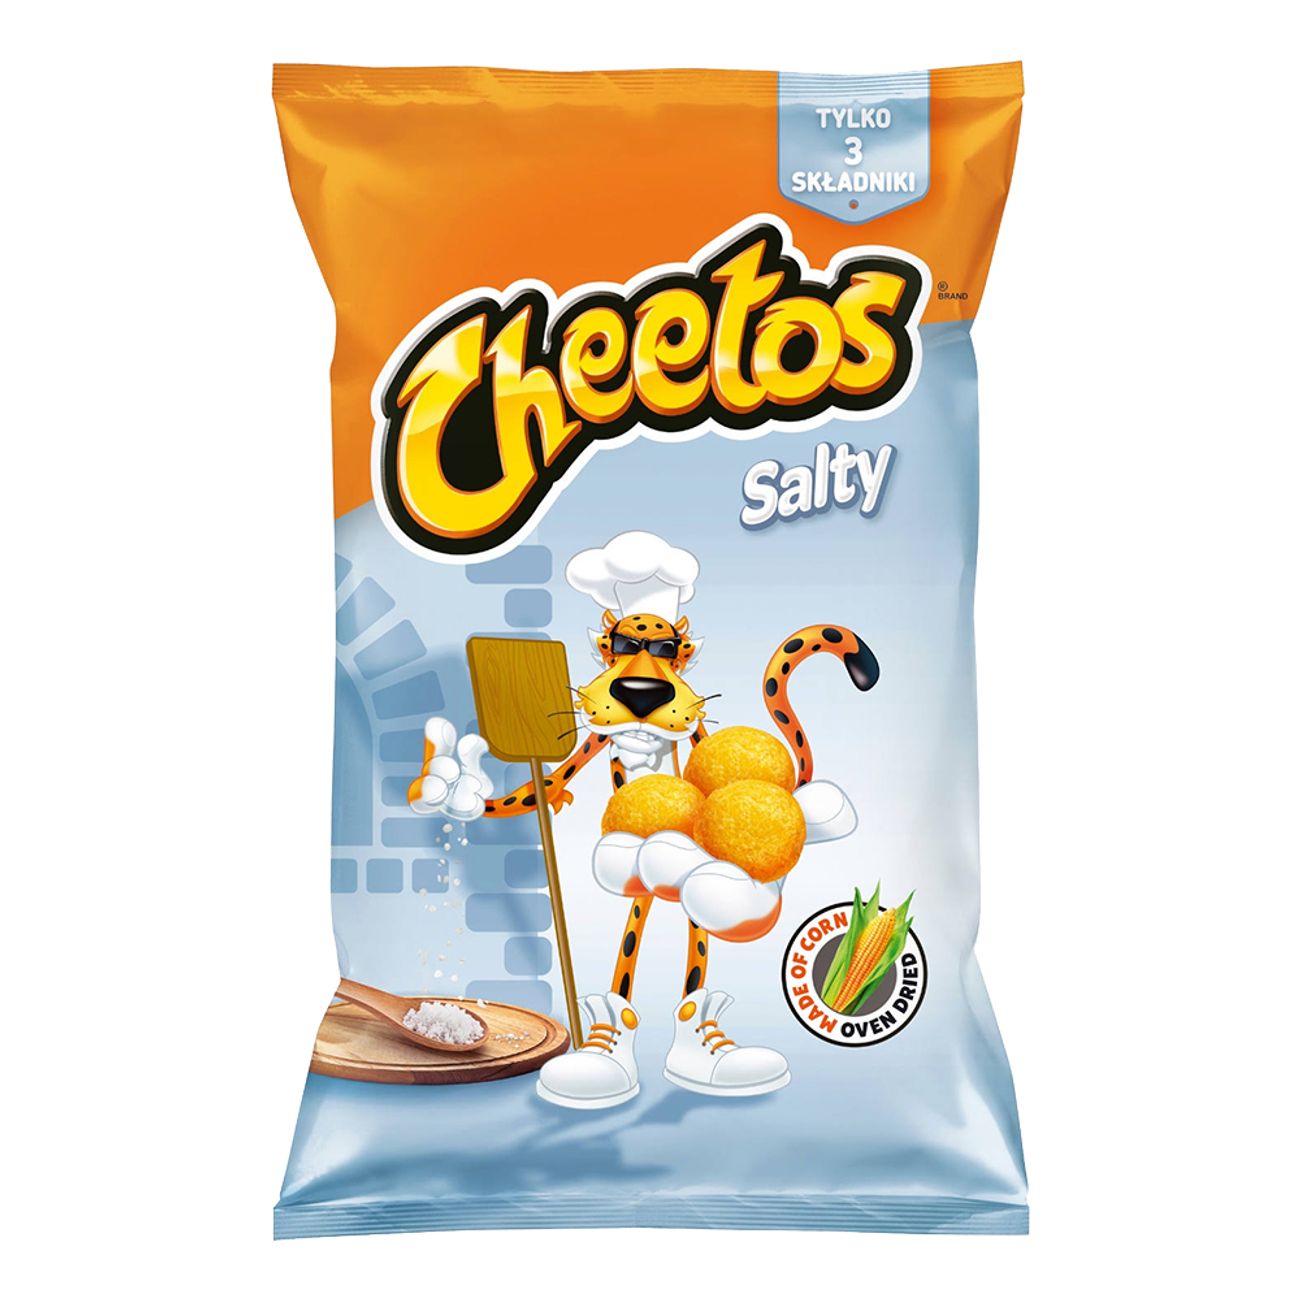 cheetos-salty-99825-1